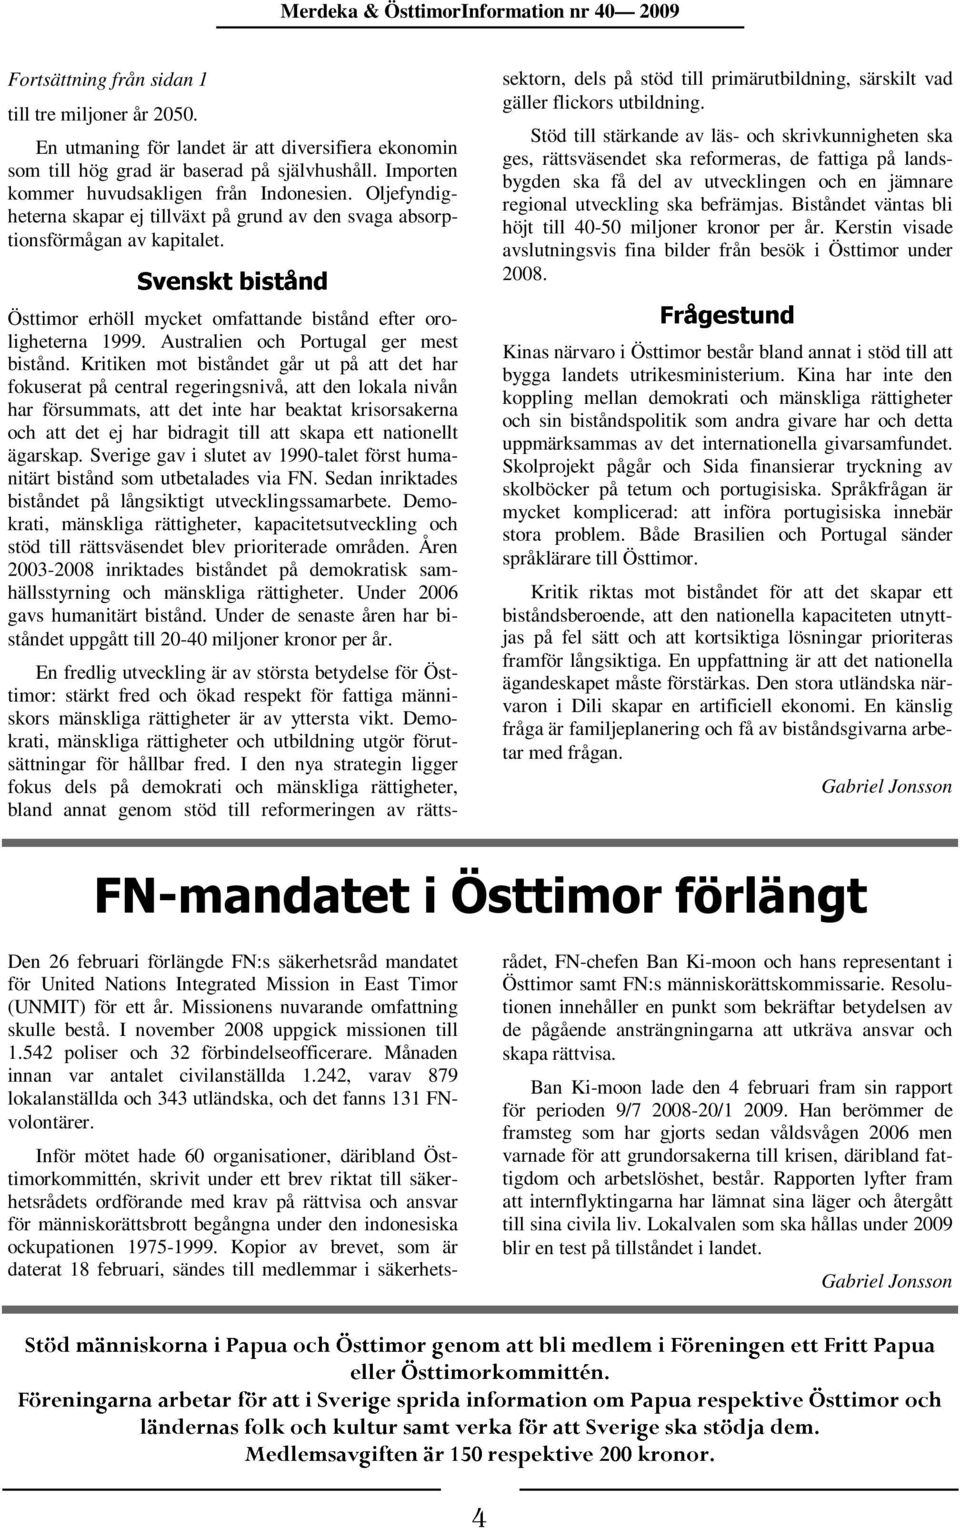 I den nya strategin ligger fokus dels på demokrati och mänskliga rättigheter, bland annat genom stöd till reformeringen av rätts- Svenskt bistånd Frågestund Merdeka & ÖsttimorInformation nr 40 2009